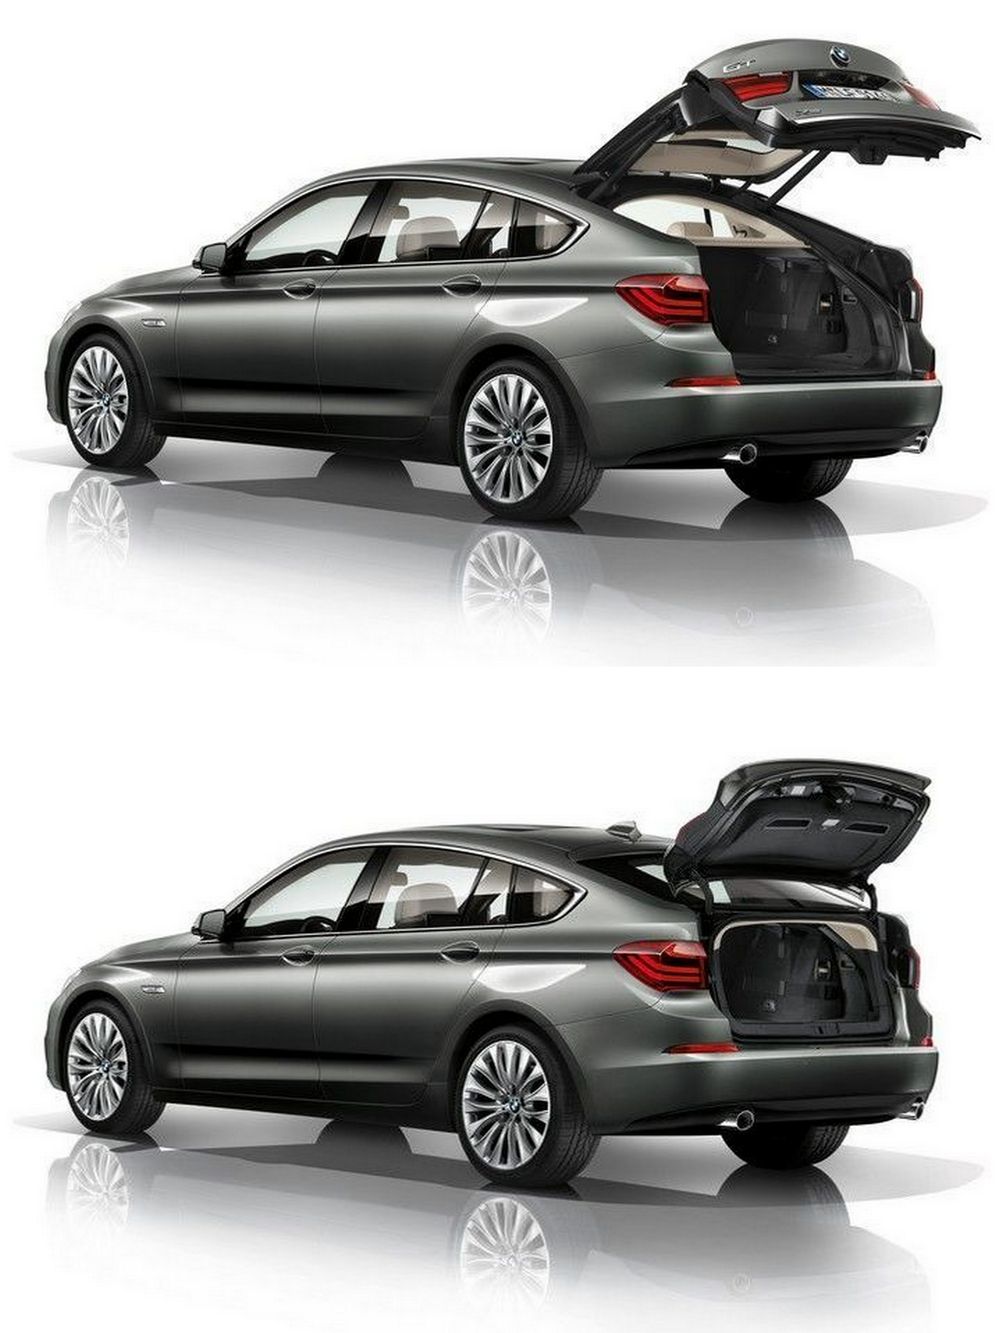 BMW 5er Gran Turismo - Kofferraum, zwei Möglichkeiten zum Öffnen der Heckklappe